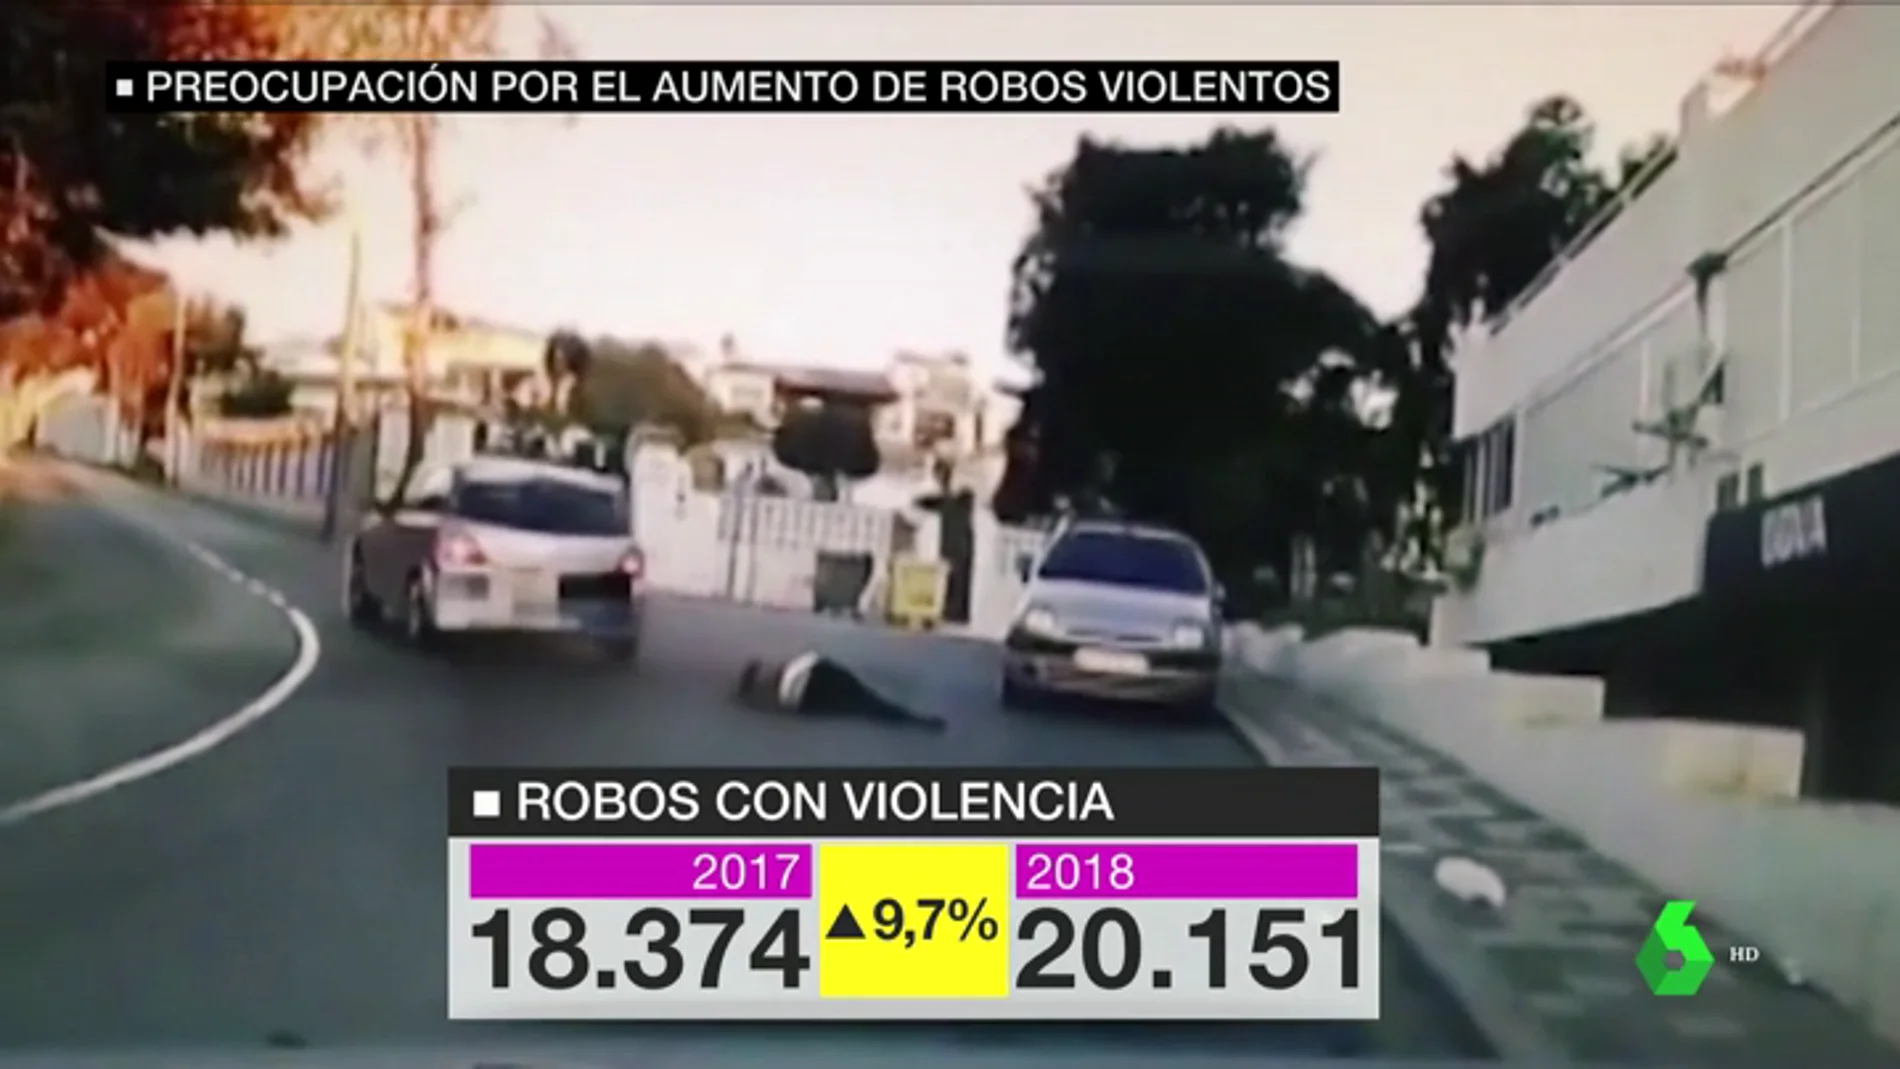 Aumentan los robos violentos en Barcelona: de 18.000 a más de 200.000 en un año